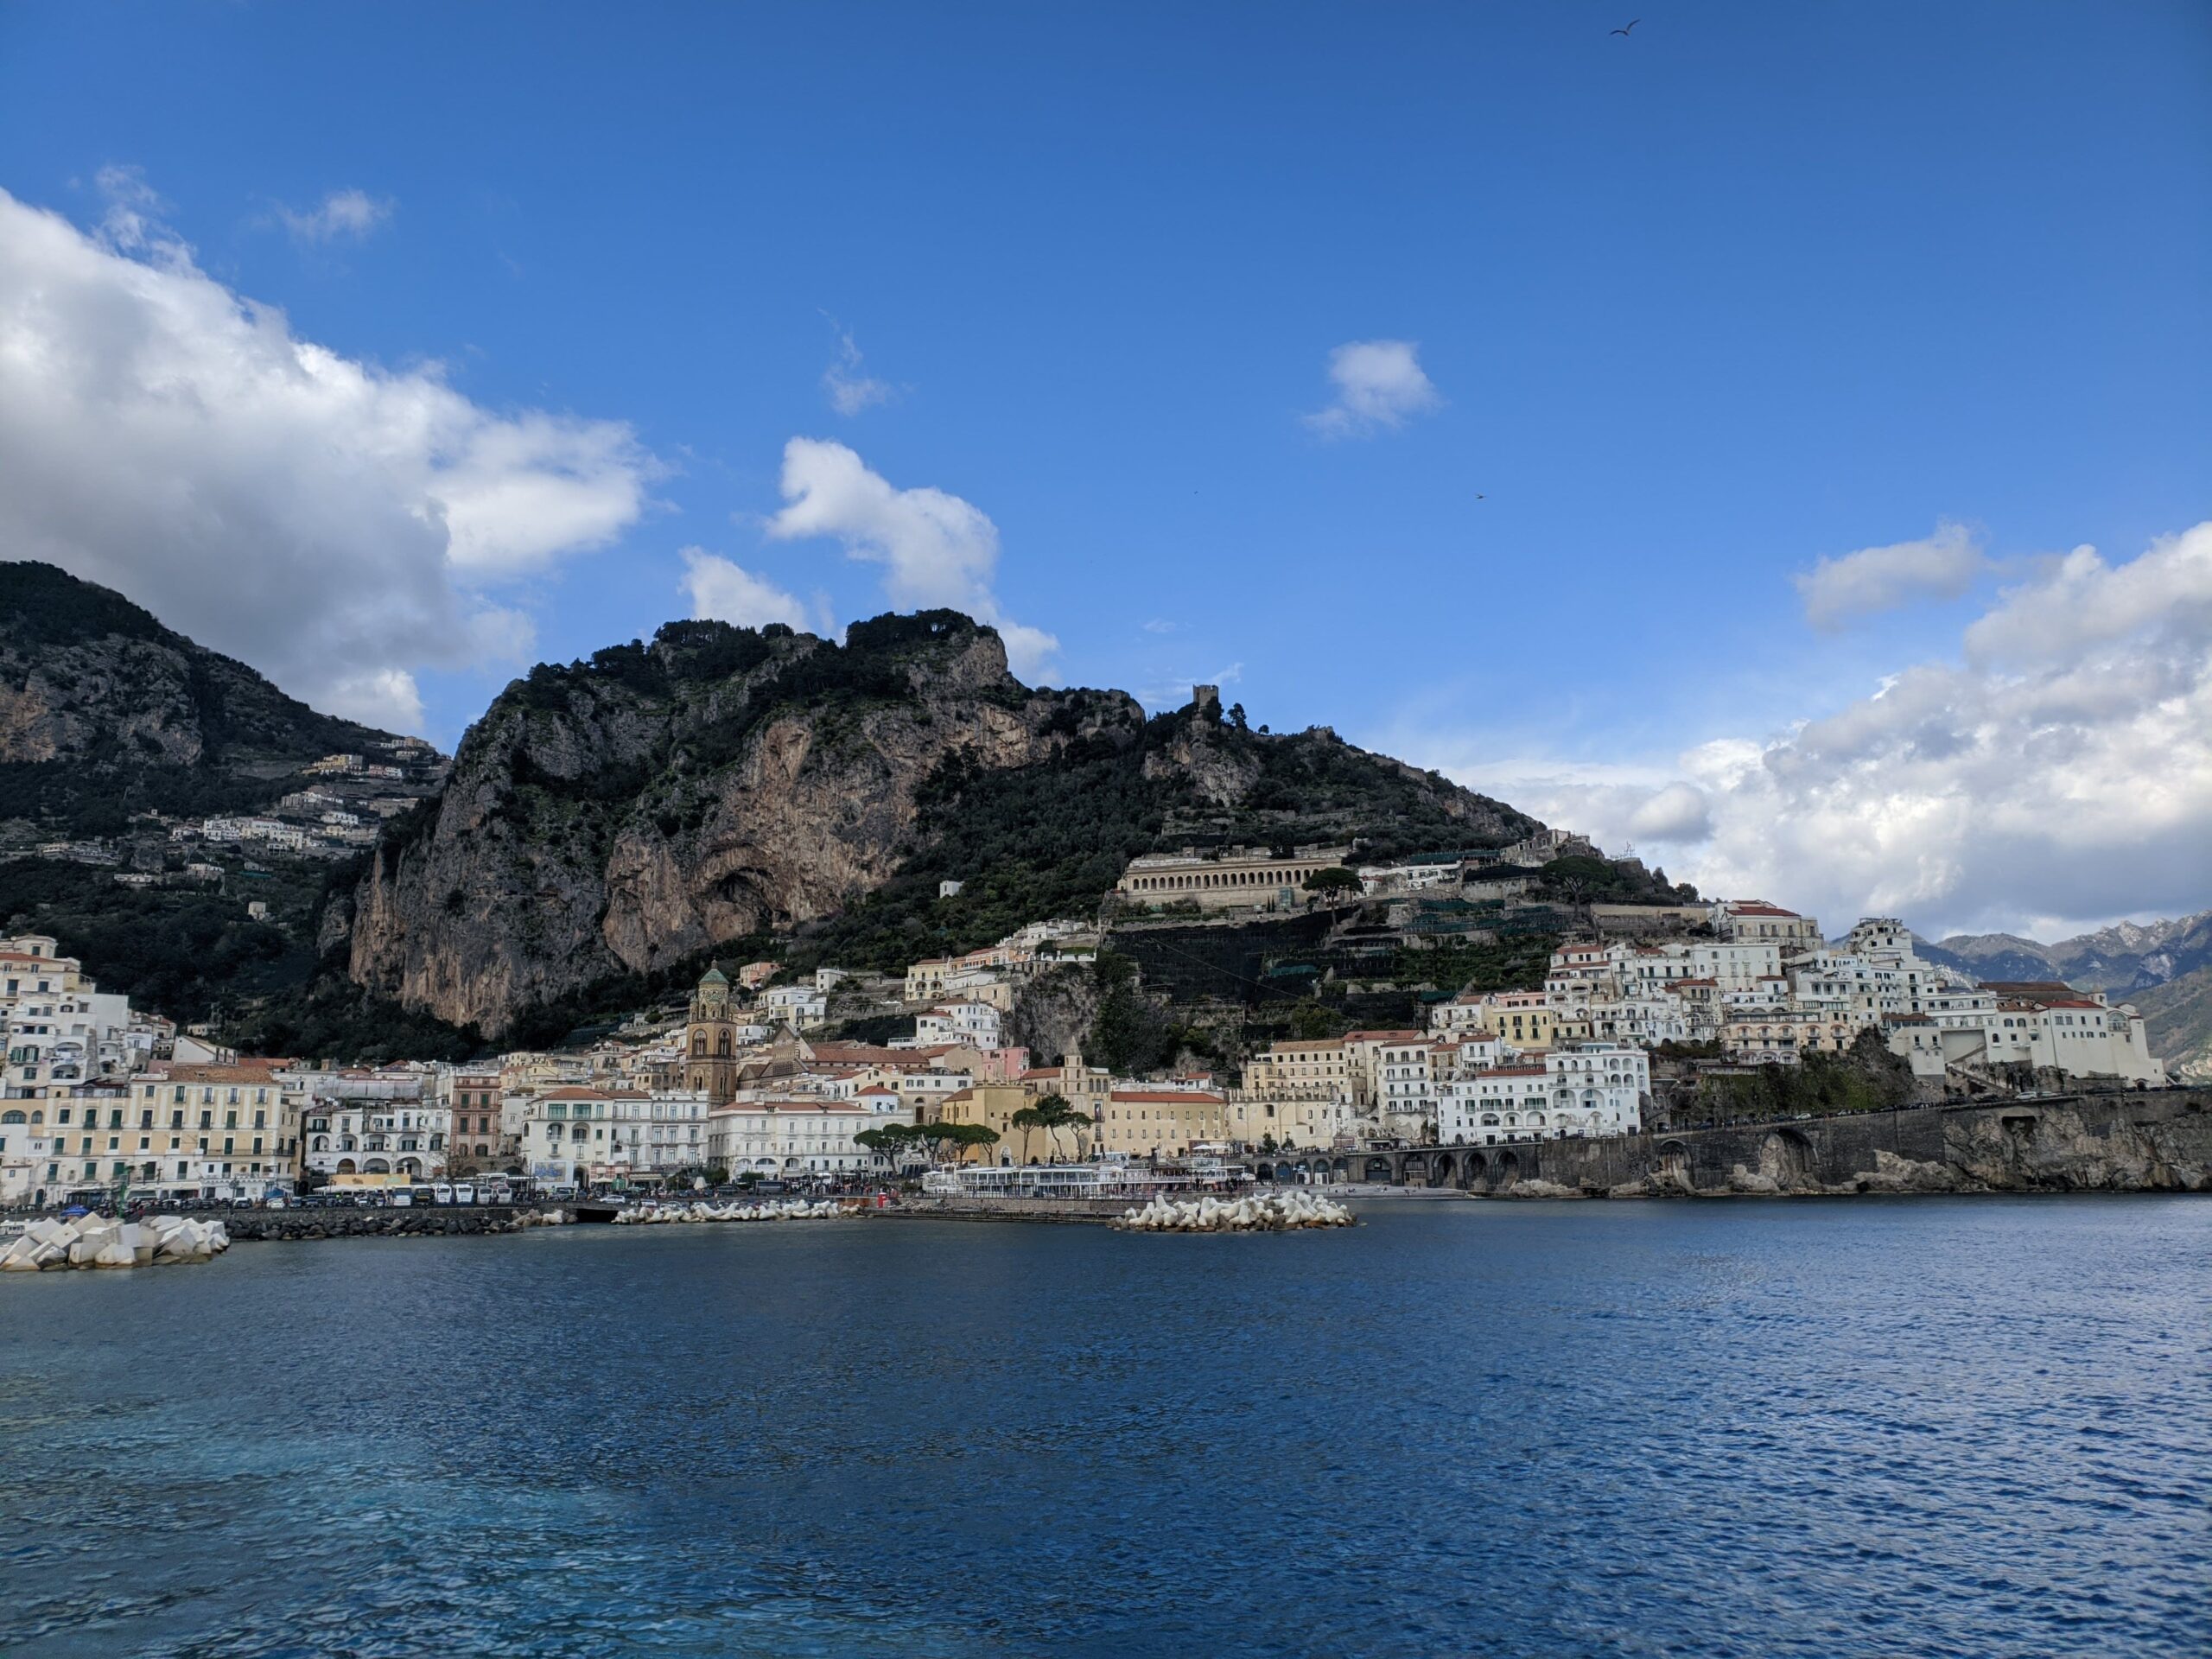 Foto de Amalfi vista do mar. É possível ver uma grande montanha rochosa com casas de tons branco amarelado que sobem até a sua metade. O mar está azul.